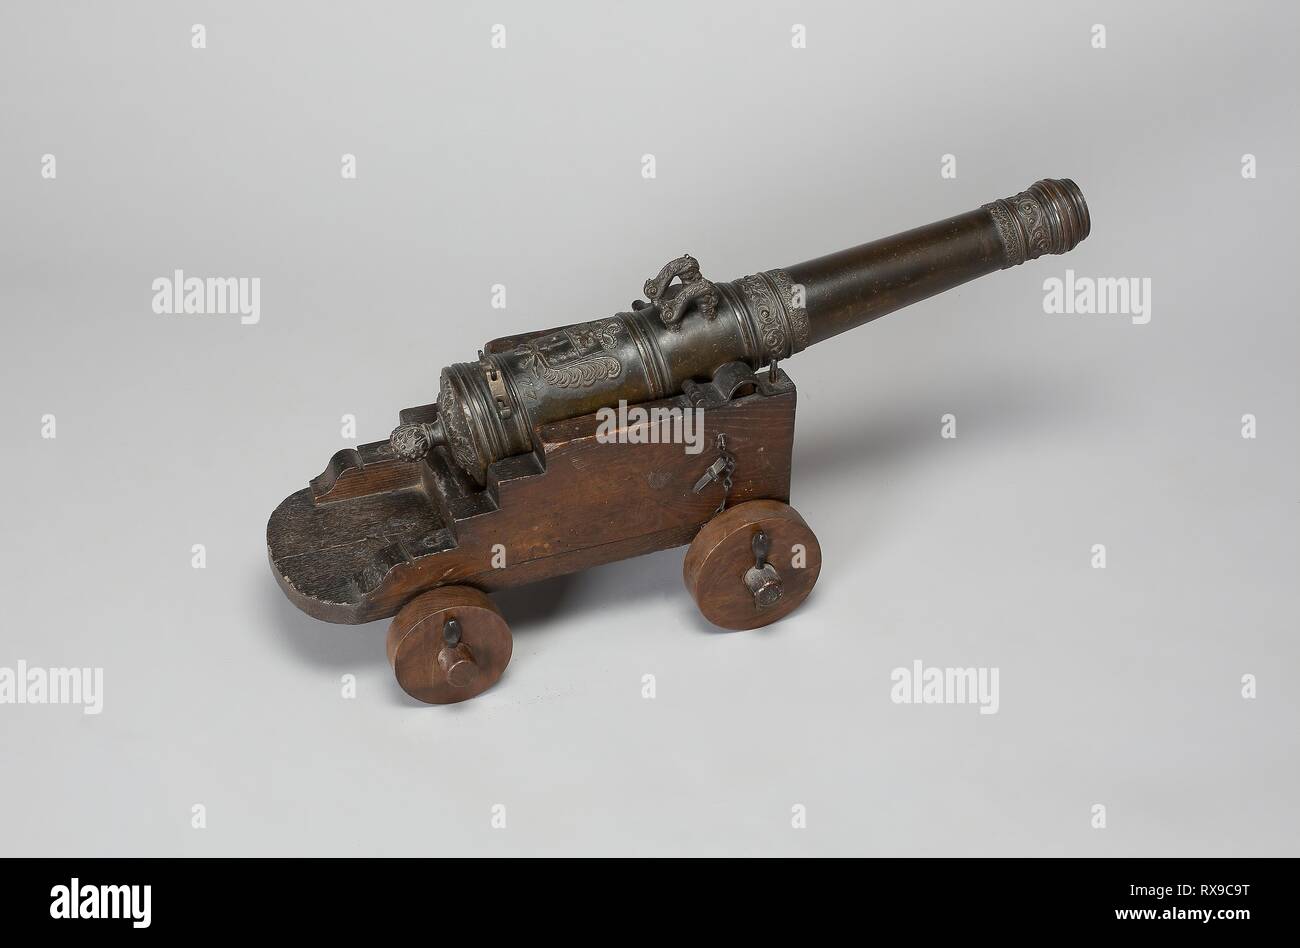 Im Feld "Modell" Kanone mit der Beförderung. Französisch, Niederländisch. Datum: 1677. Abmessungen: Länge über Alles von Cannon: 24 3/4 in. (62,9 cm) Kaliber: 1 1/18 in. (2,8 cm) Durchmesser der Räder: Vorne 4 5/8 in. (11,8 cm); Hinten 3 15/16 in. (10 cm) Abstand zwischen dem Ende des hölzernen a×el: 10 3/4 in. (27,4 cm) Gesamtlänge der montiert Cannon: 29 1/4 in. (47,3 cm) Gewicht von Cannon: 43 lb. 2 oz. Gewicht der Beförderung: 7 lb. 15 oz. Bronze und Holz. Herkunft: Frankreich. Museum: Das Chicago Art Institute. Stockfoto